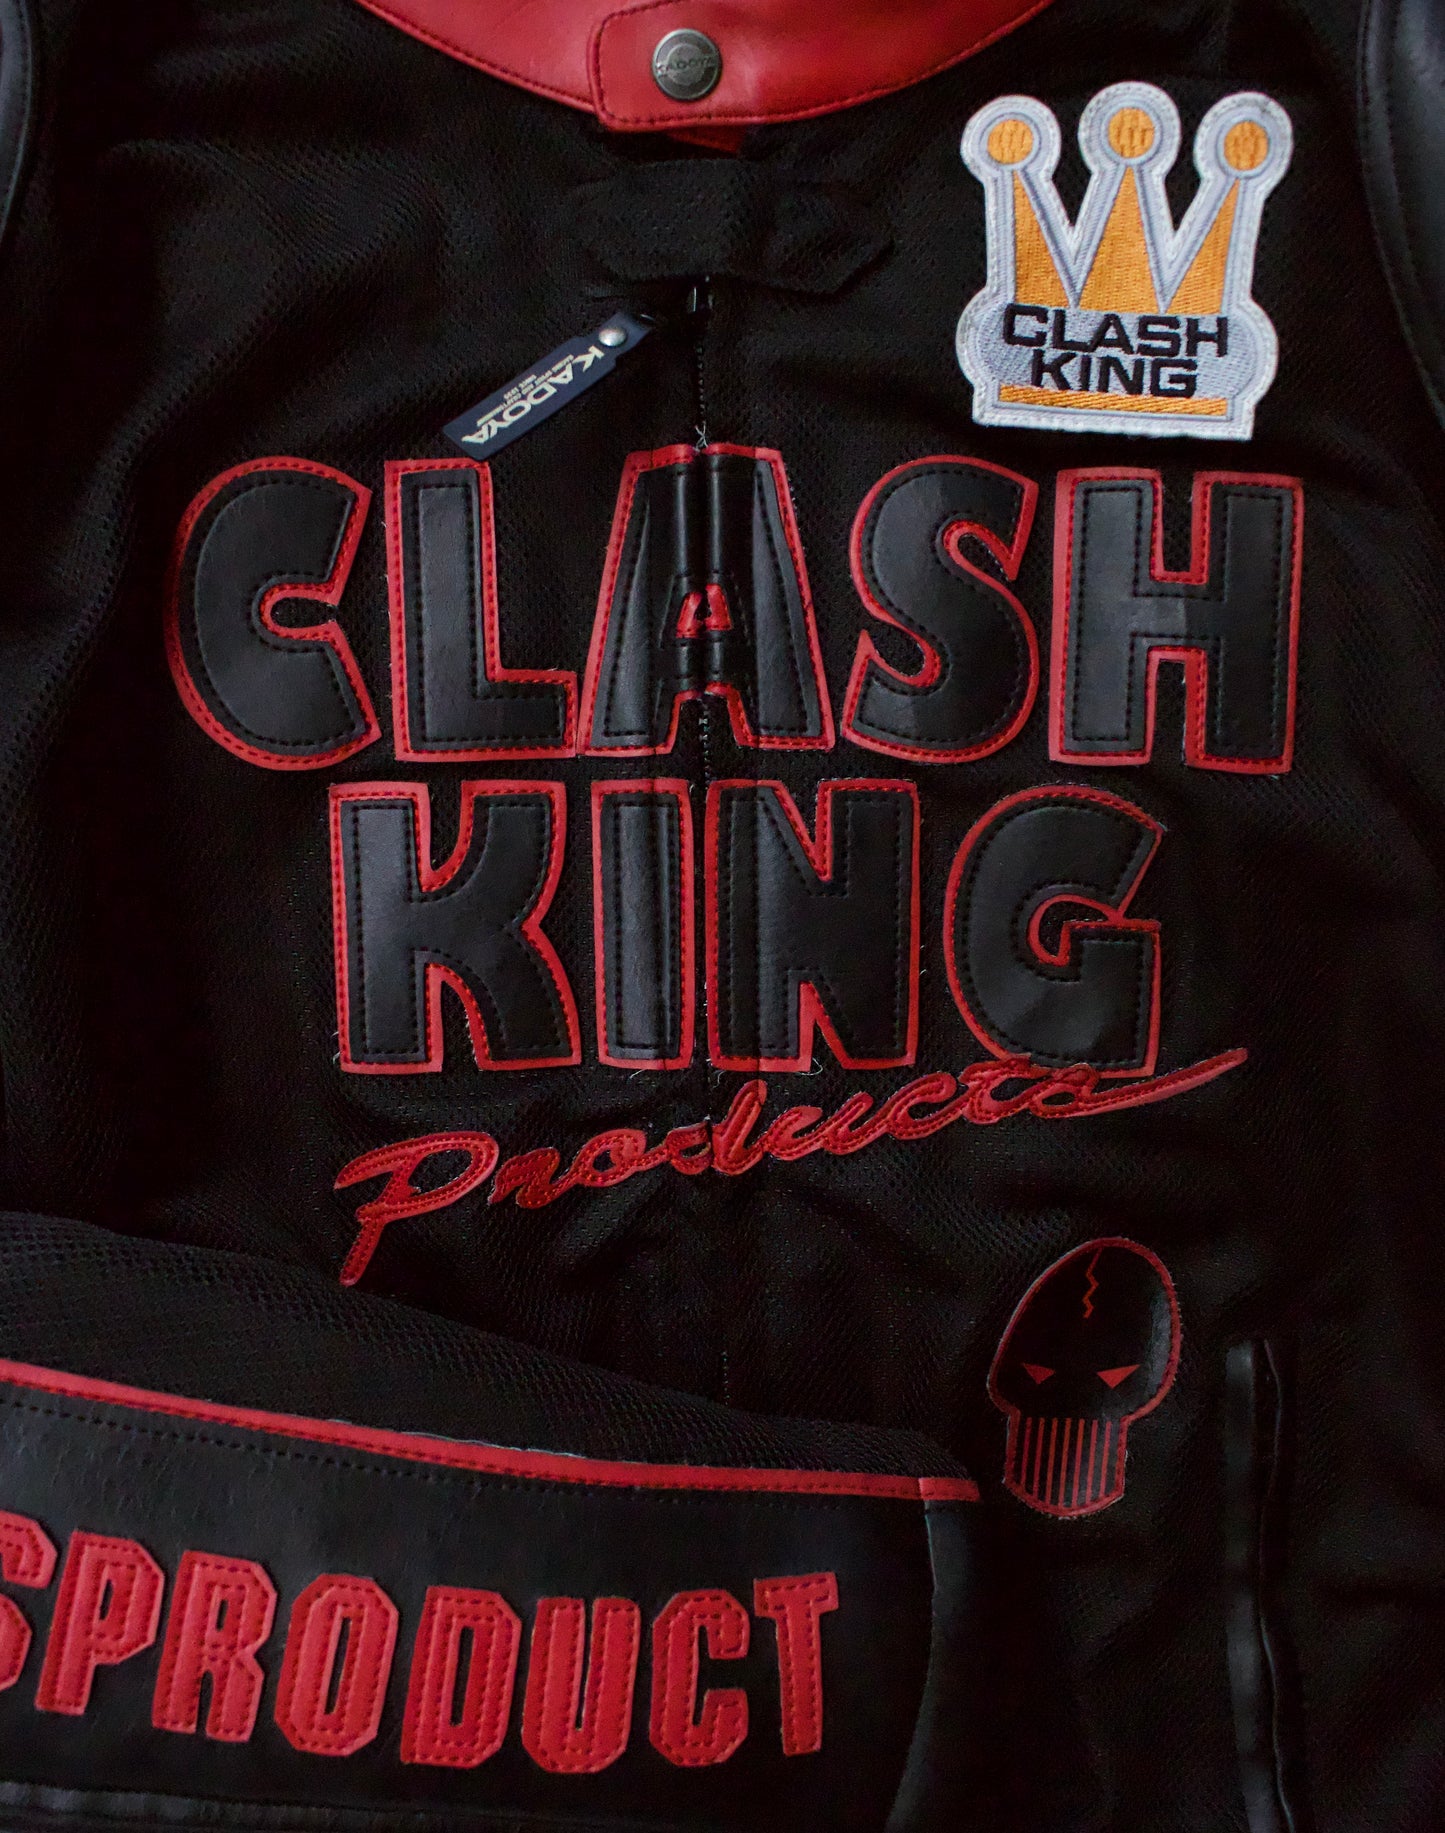 Kadoya K’s Leather Early 00s “Clash King” Mesh Motorcycle Jacket